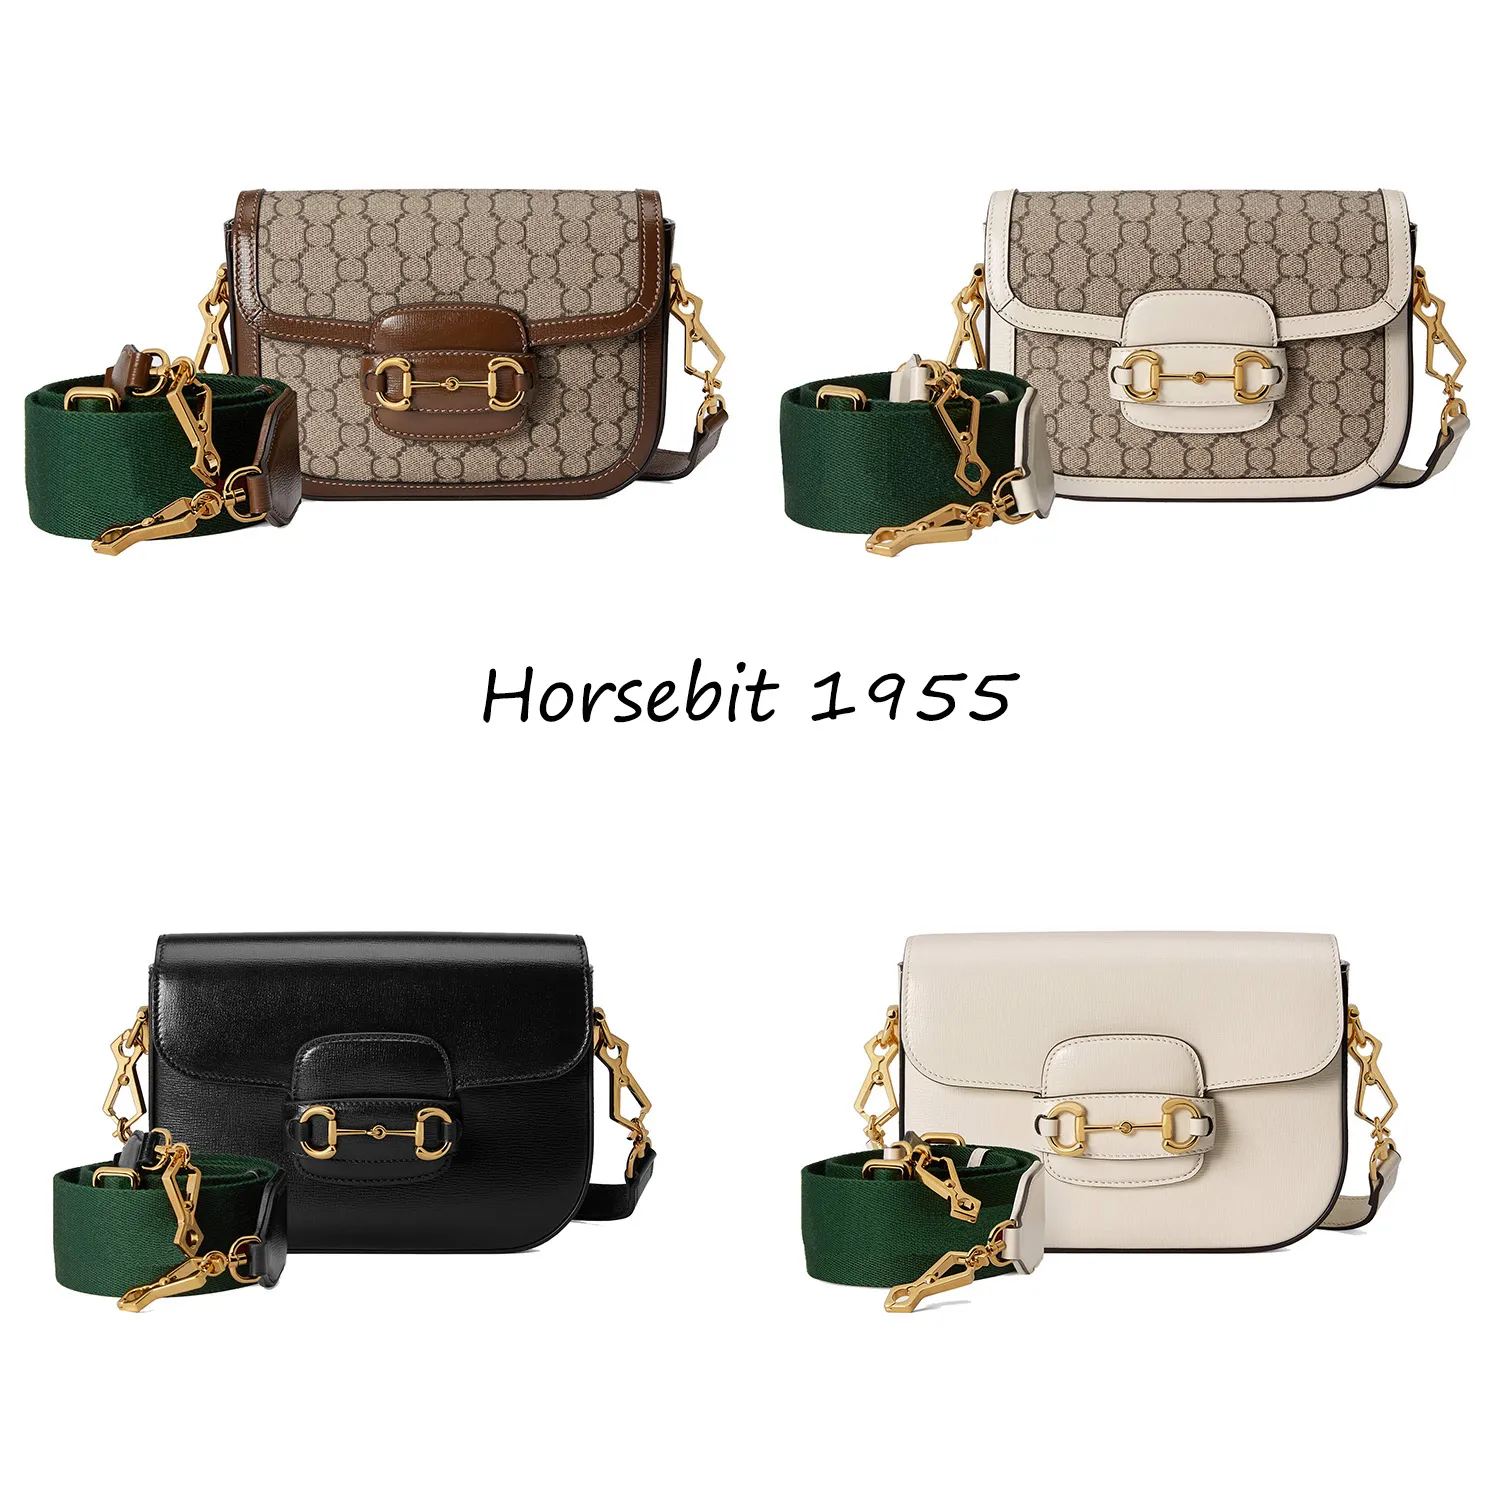 Вечерние сумки роскошные дизайнерские бренды мода Horsebit 1955 серия на плечевой сумке мини -сумка для кроссбакса (с съемными плечевыми ремнями)